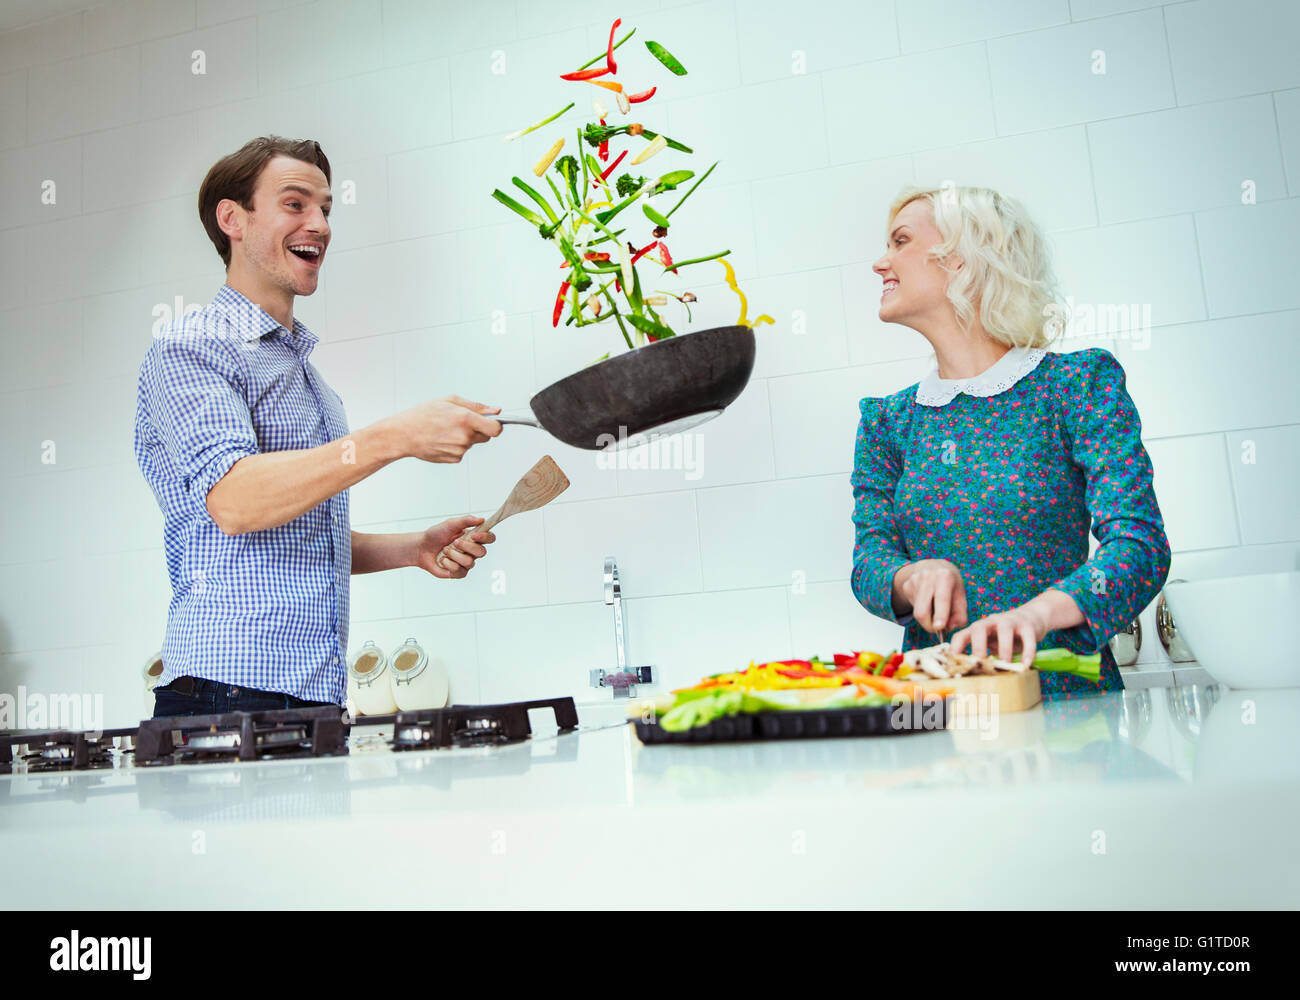 Sorprendido par cocinar verduras Voltear en la sartén en la cocina Foto de stock